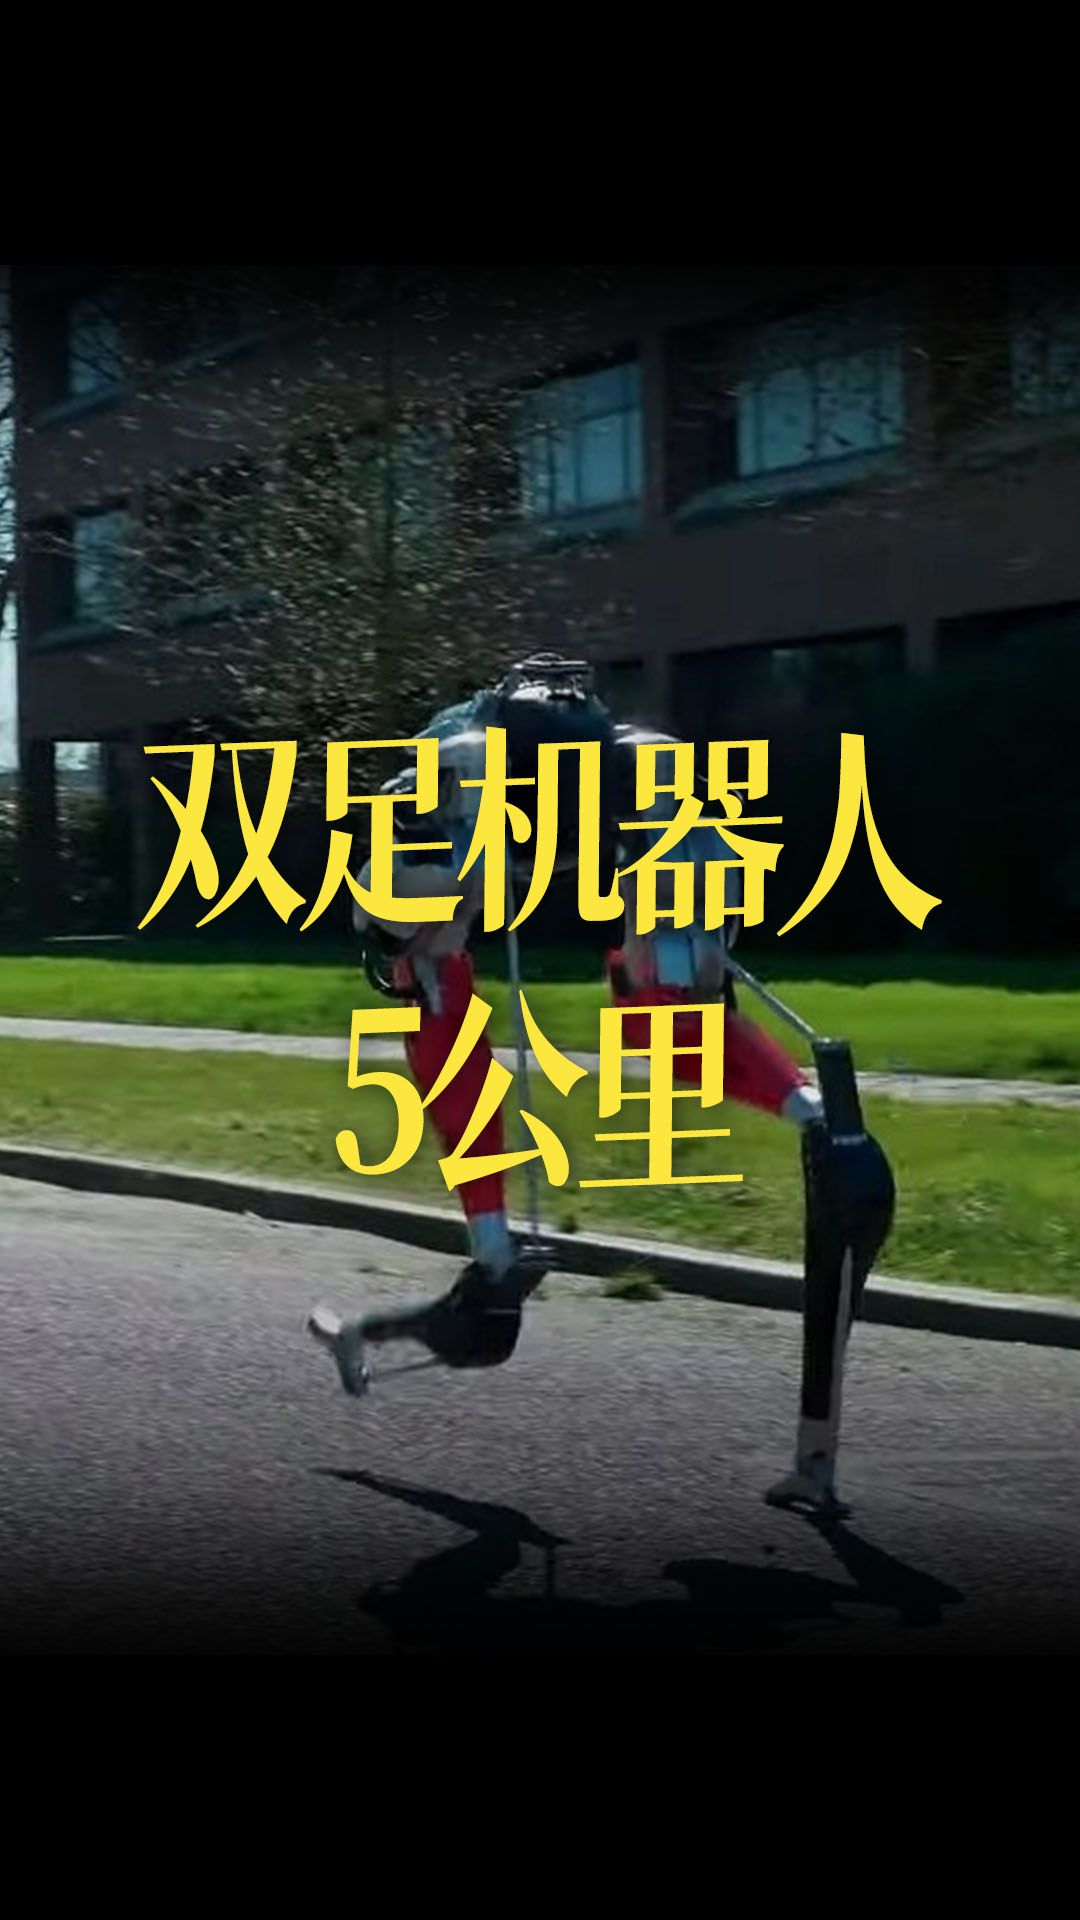 【中文】双足步行机器人，一次充电后走完5公里，用时53分钟